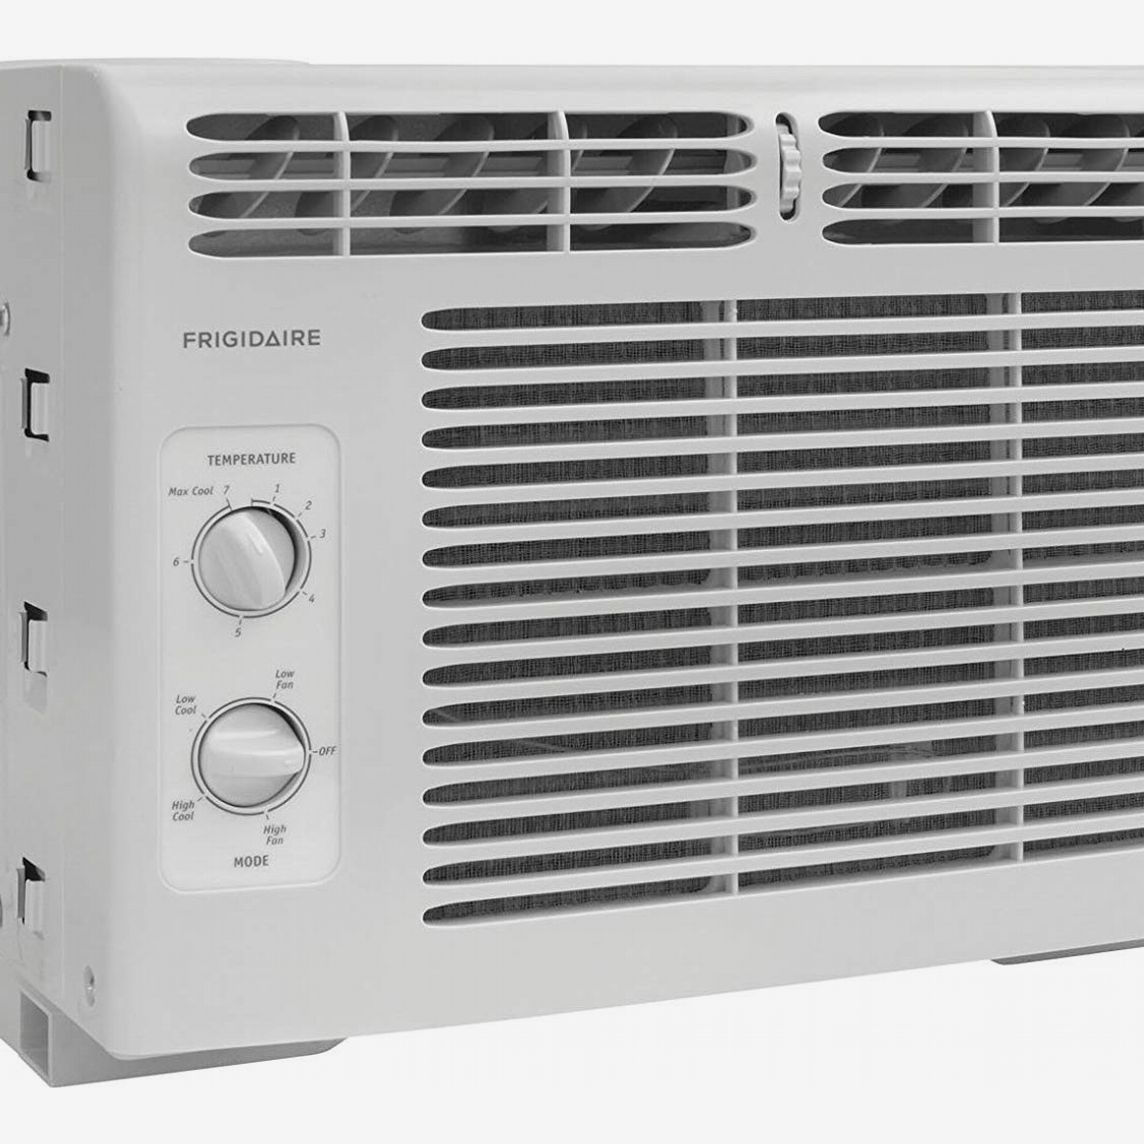 5000 btu air conditioner square footage